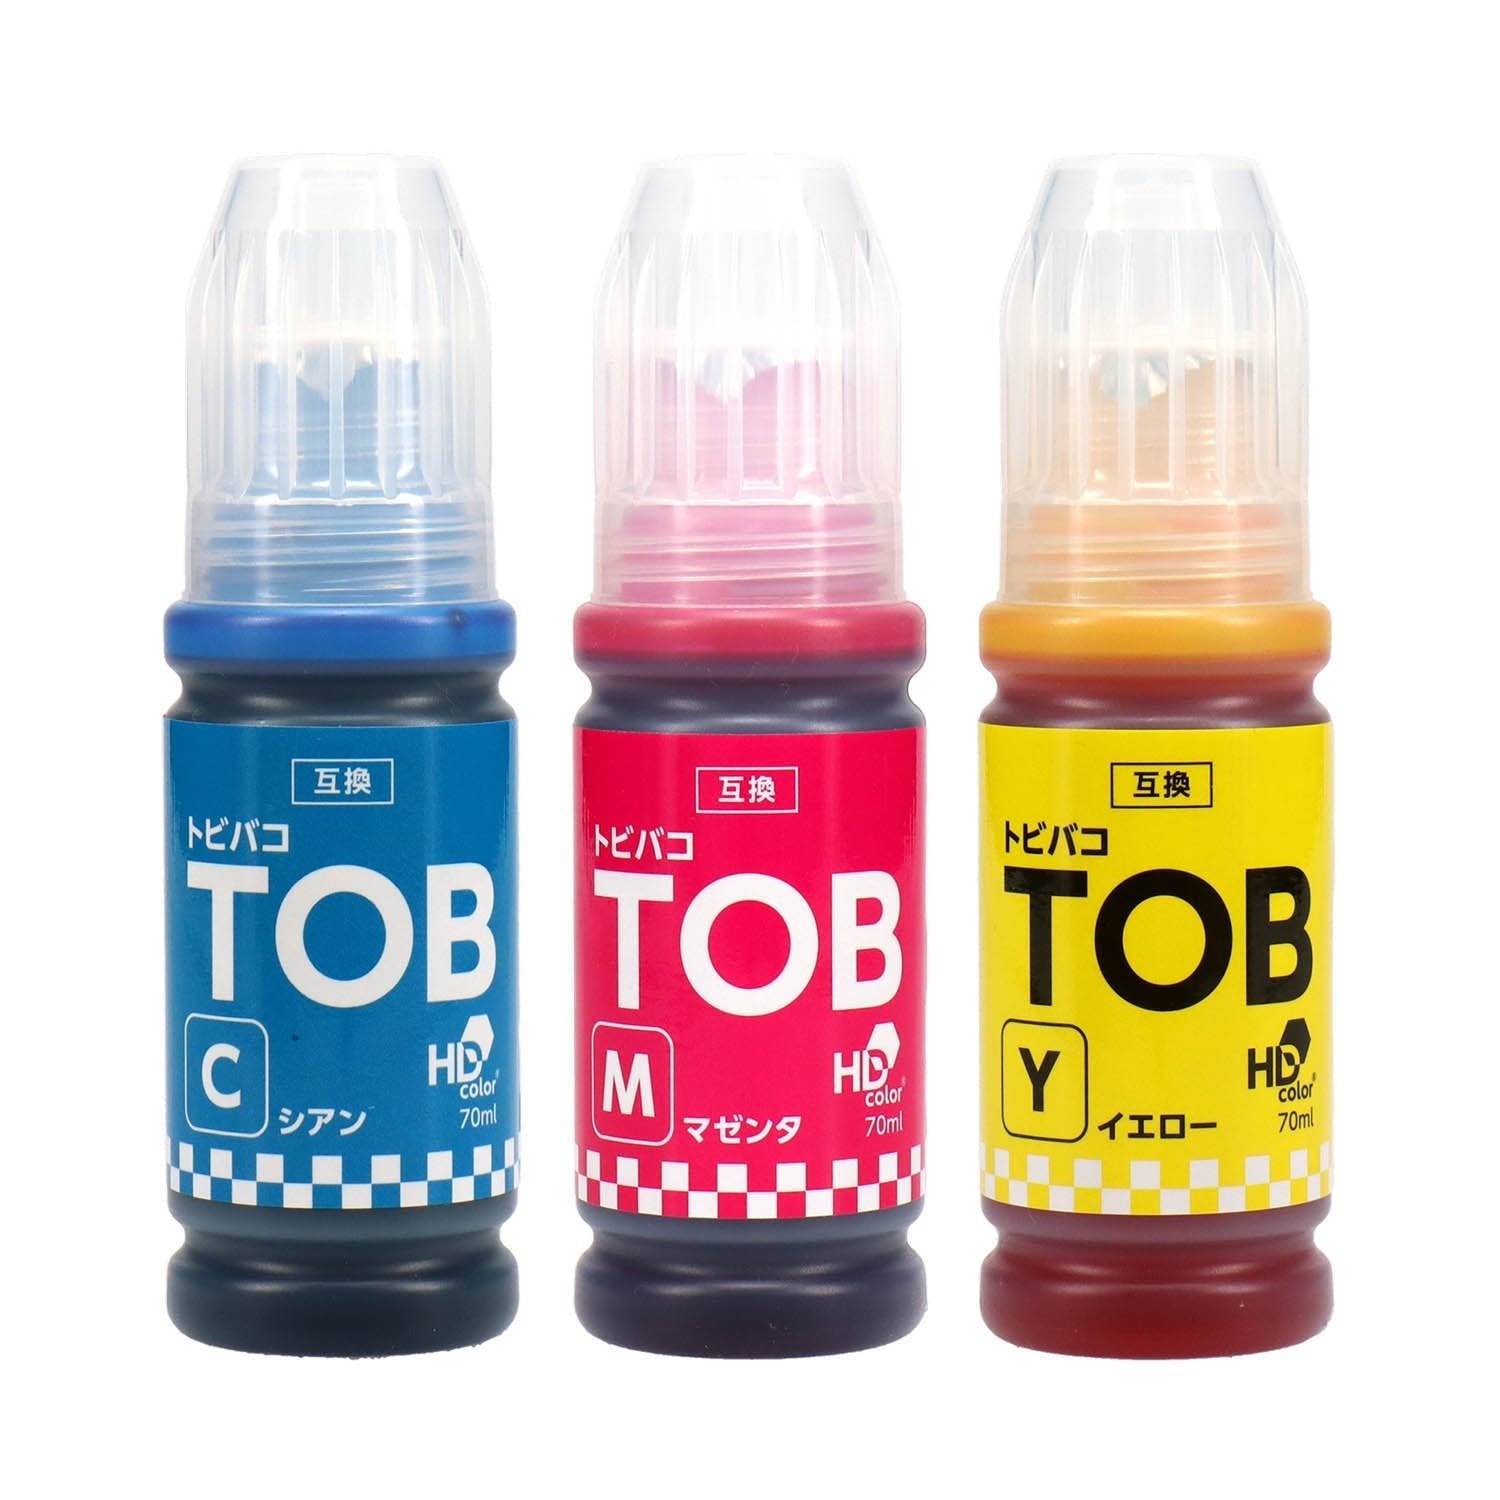 エプソン用 TOB (トビバコ) 互換インクボトル カラー3色